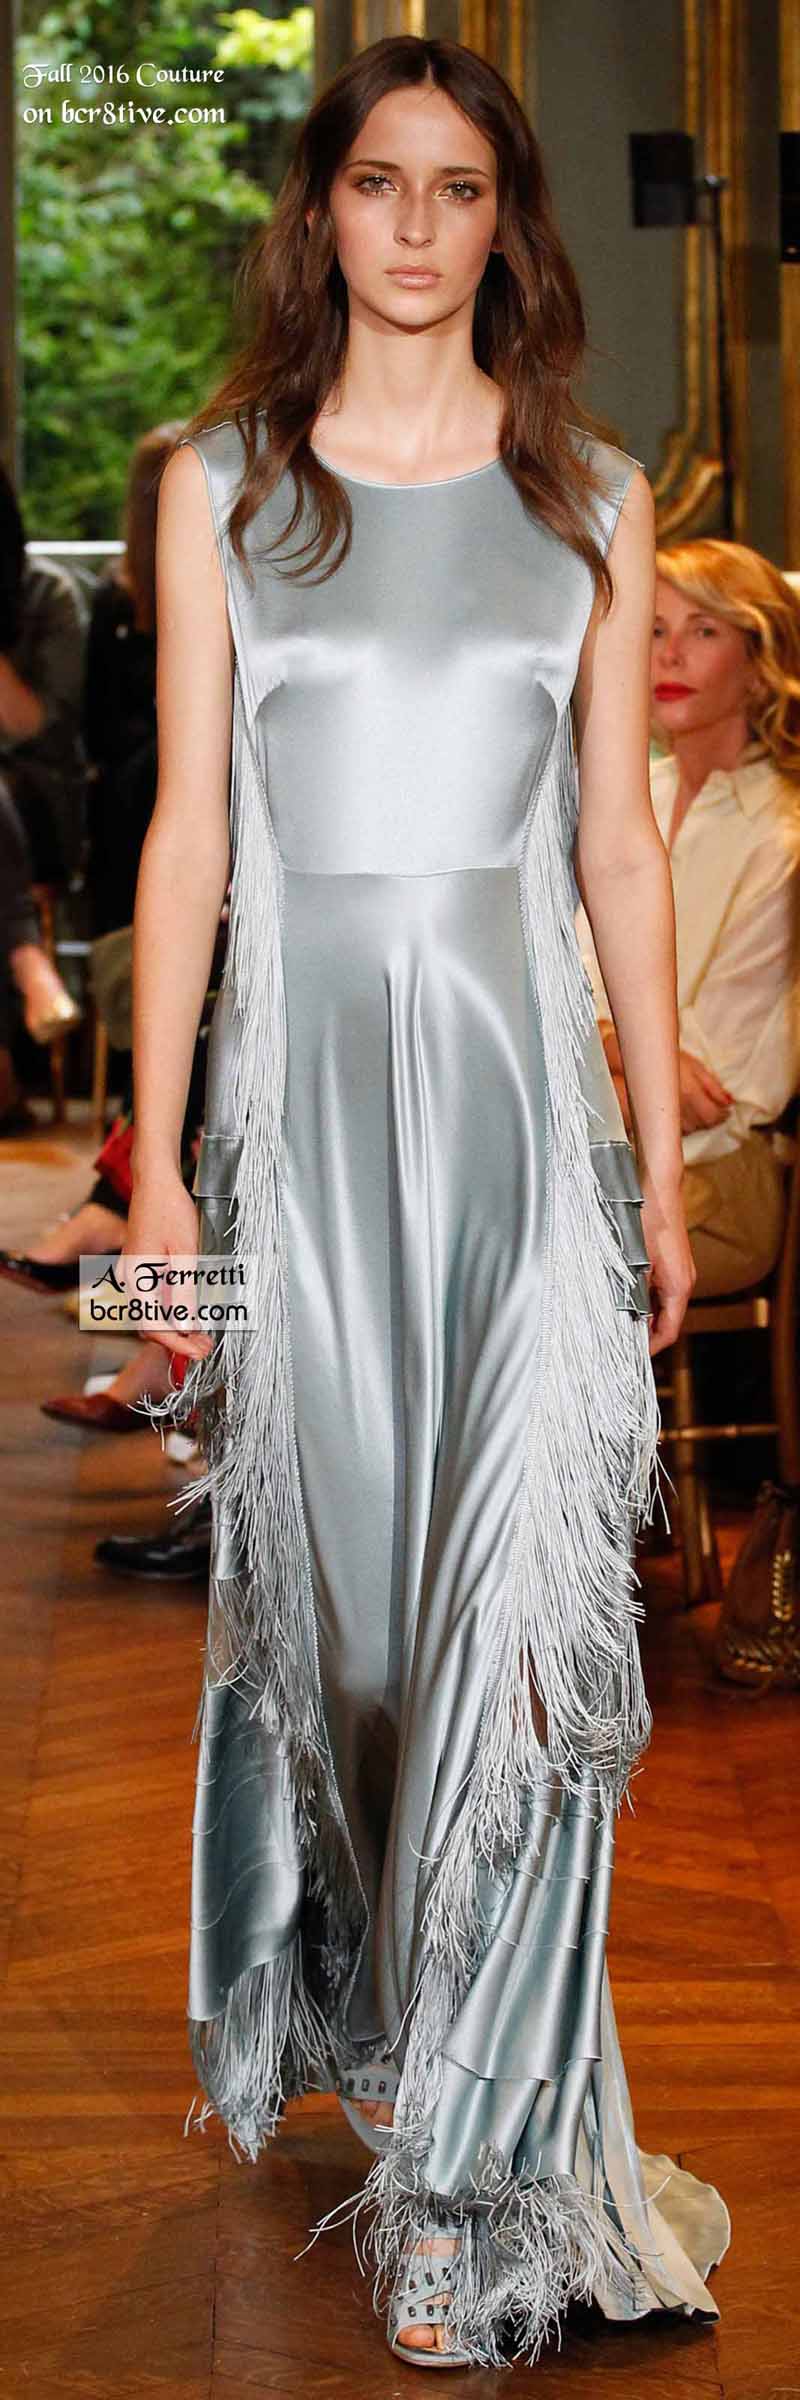 Alberta Ferretti - The Best Fall 2016 Haute Couture Fashion